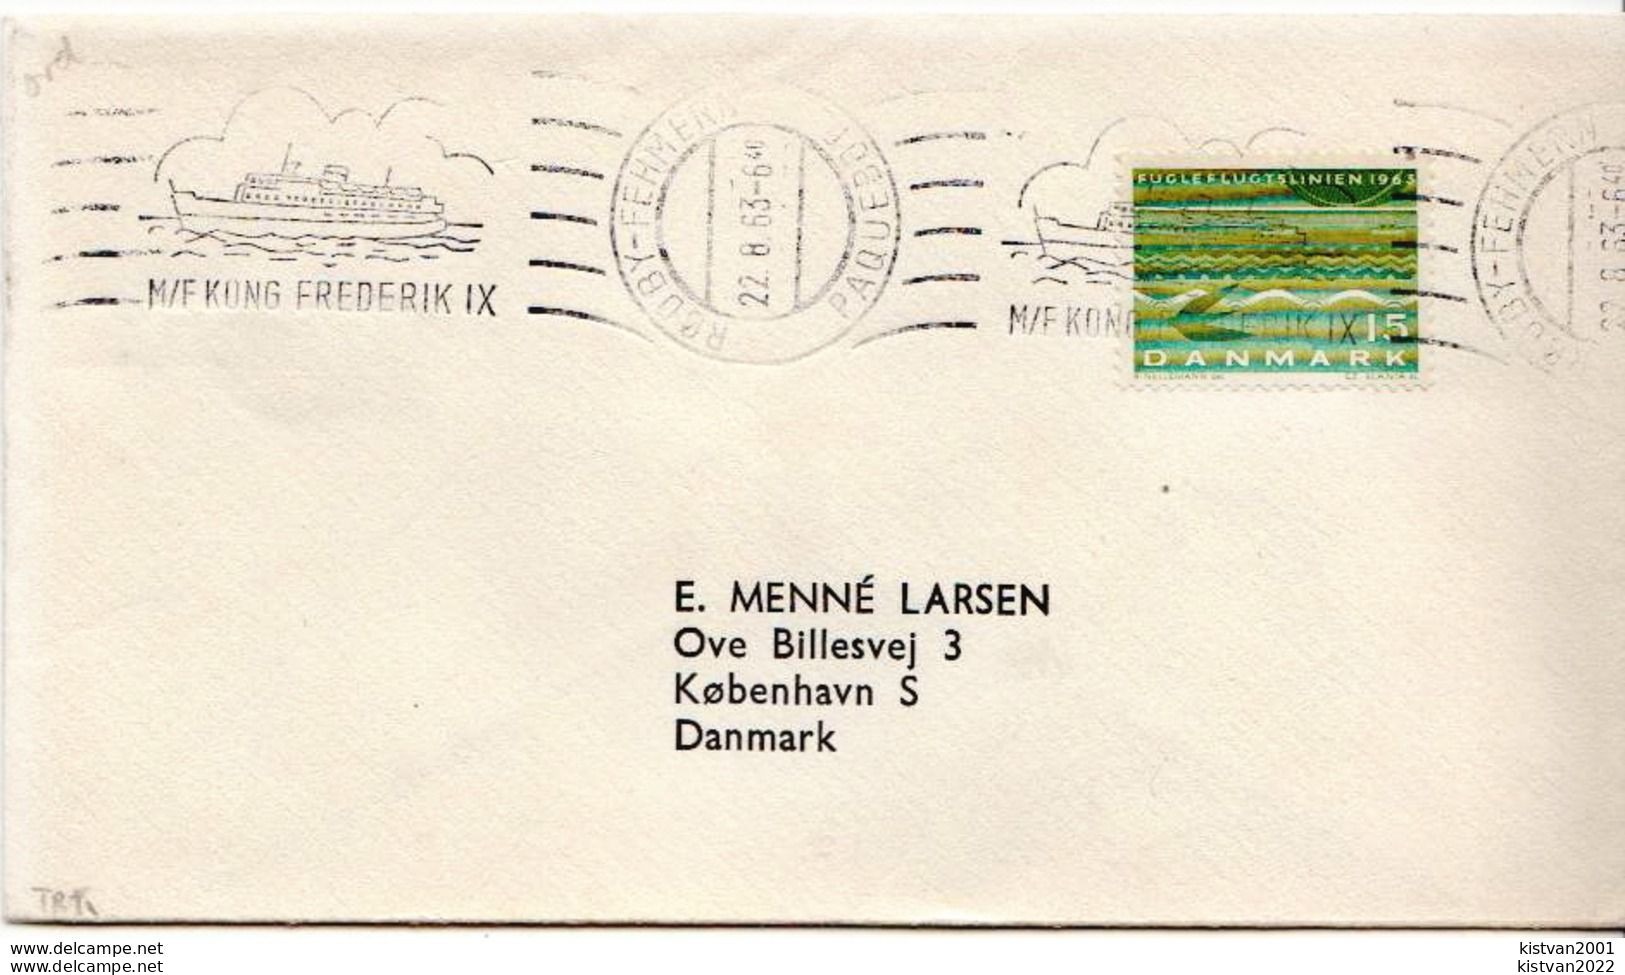 Postal History Cover: Denmark Cover With M/F KONG FREDERIK IX Ship Cancel - Briefe U. Dokumente